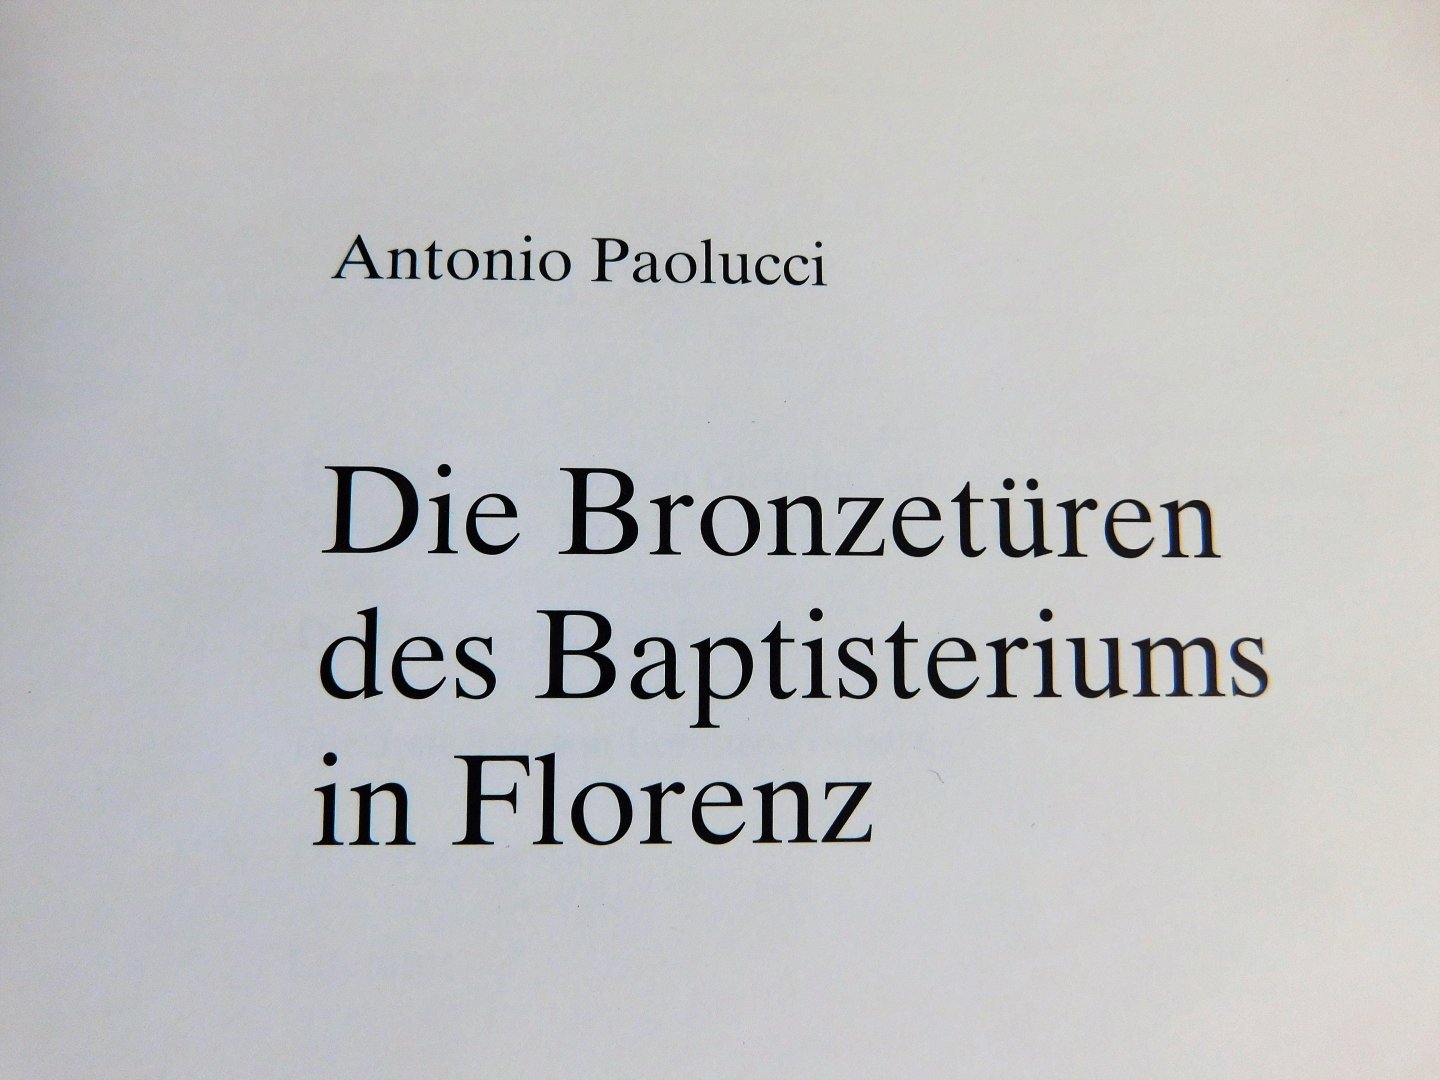 Antonio Paolucci - Die Bronzetüren des Baptisteriums in Florenz.